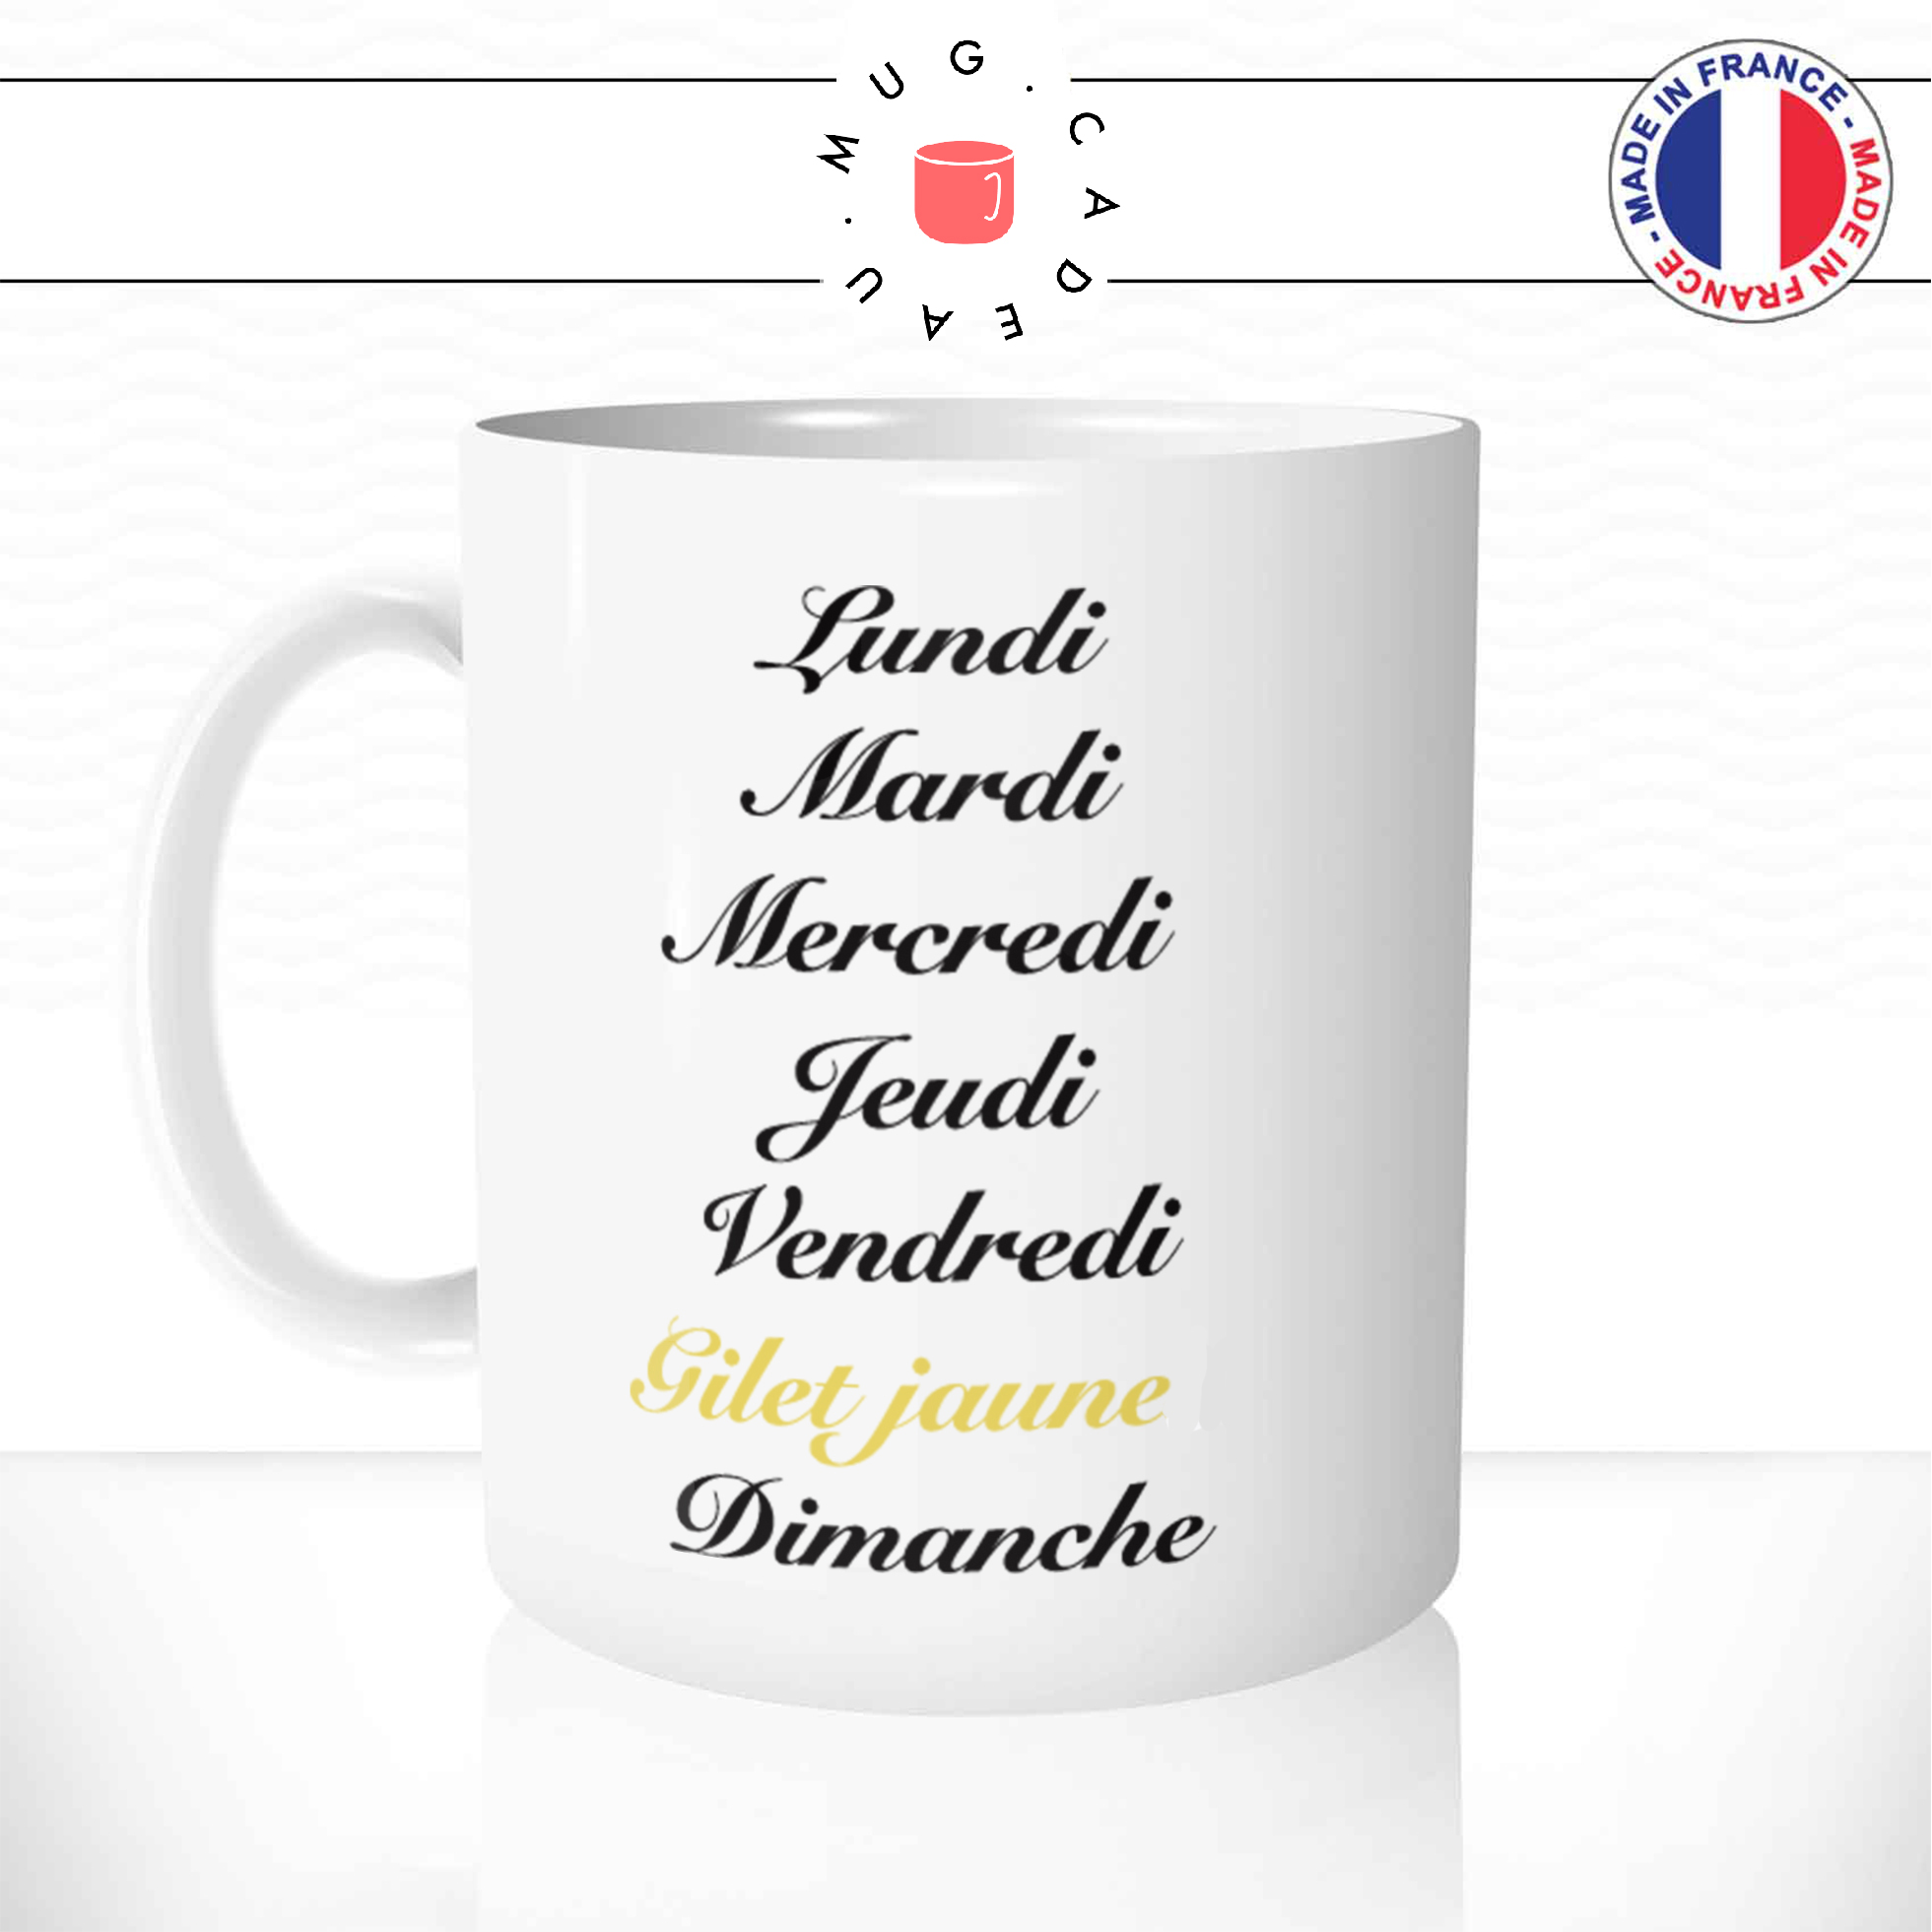 mug-tasse-ref30-citation-drole-gilet-jaune-semaine-samedi-cafe-the-mugs-tasses-personnalise-anse-gauche